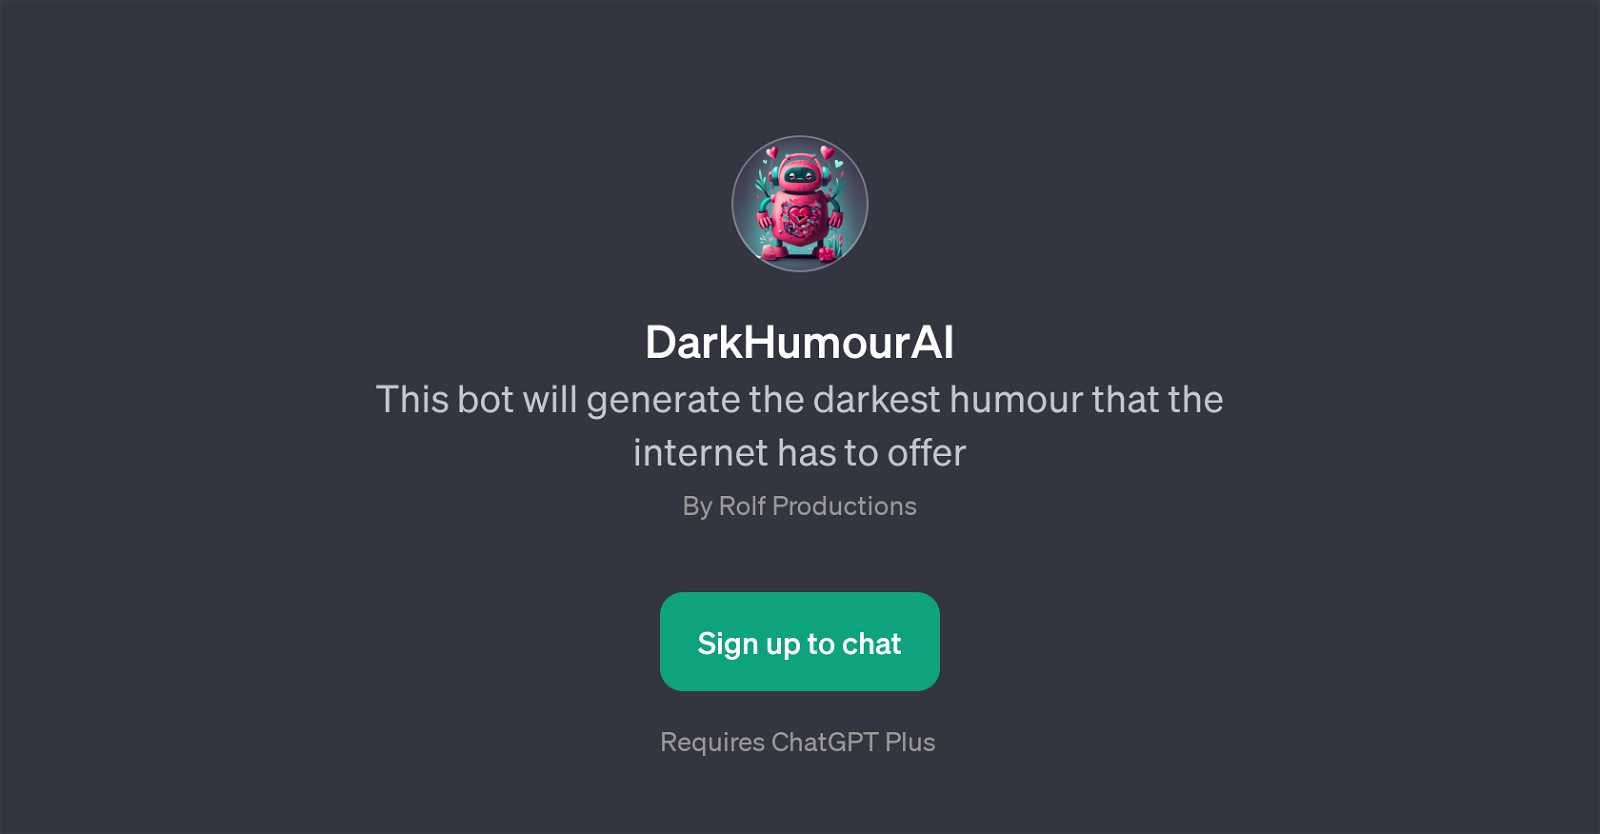 DarkHumourAI website